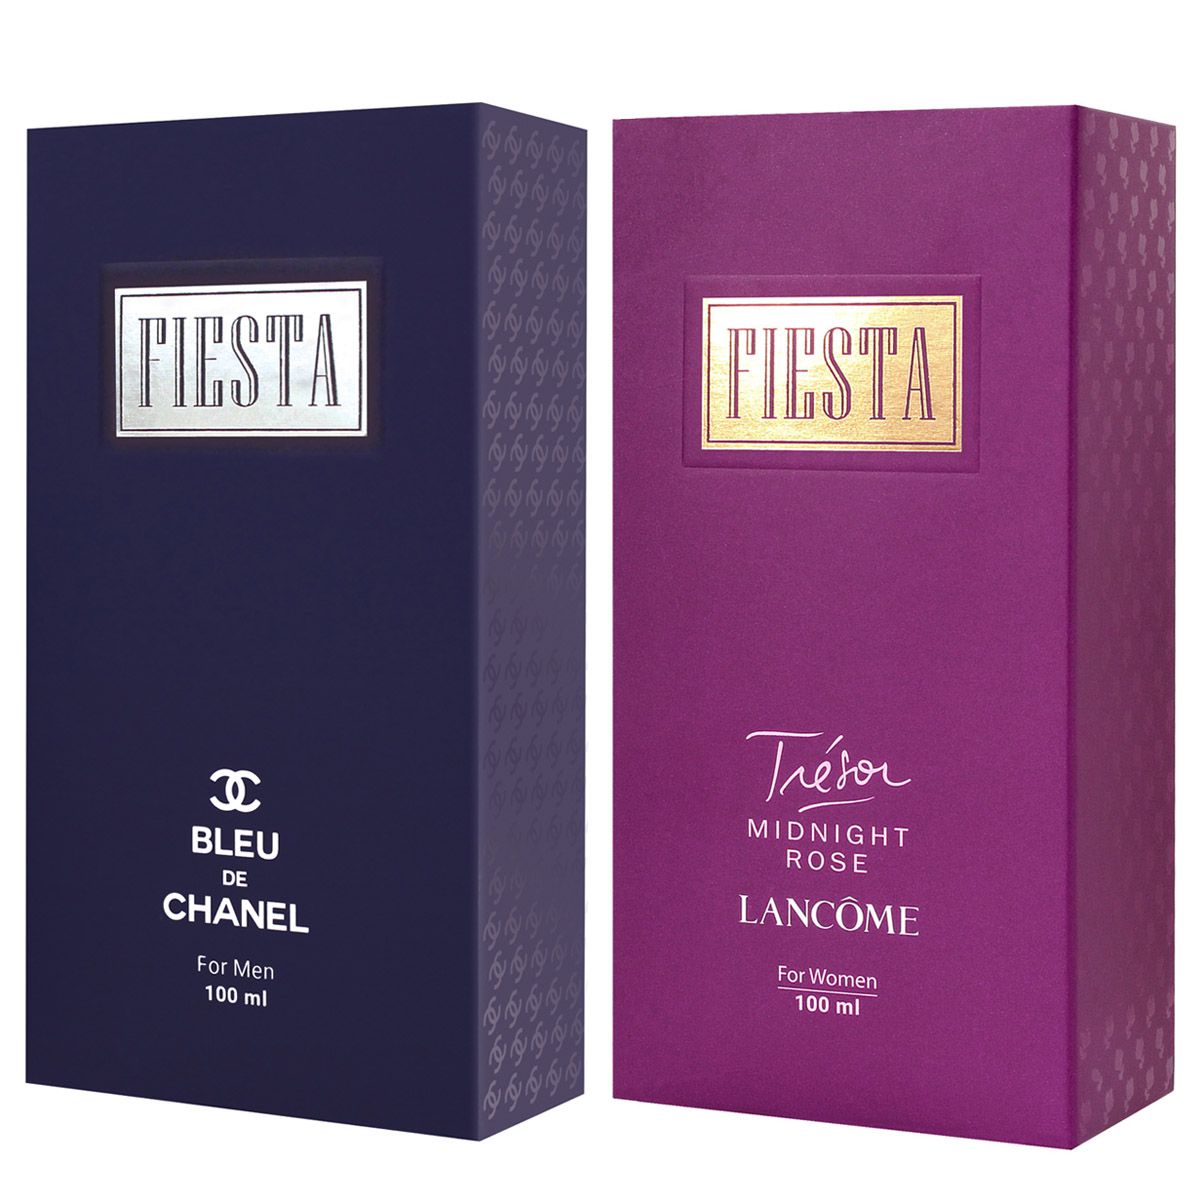 ادو پرفیوم زنانه فیستا مدل Lancome Tresor Midnight Rose حجم 100 میلی لیتر به همراه ادو پرفیوم مردانه فیستا مدل Bleu de Chanel -  - 2